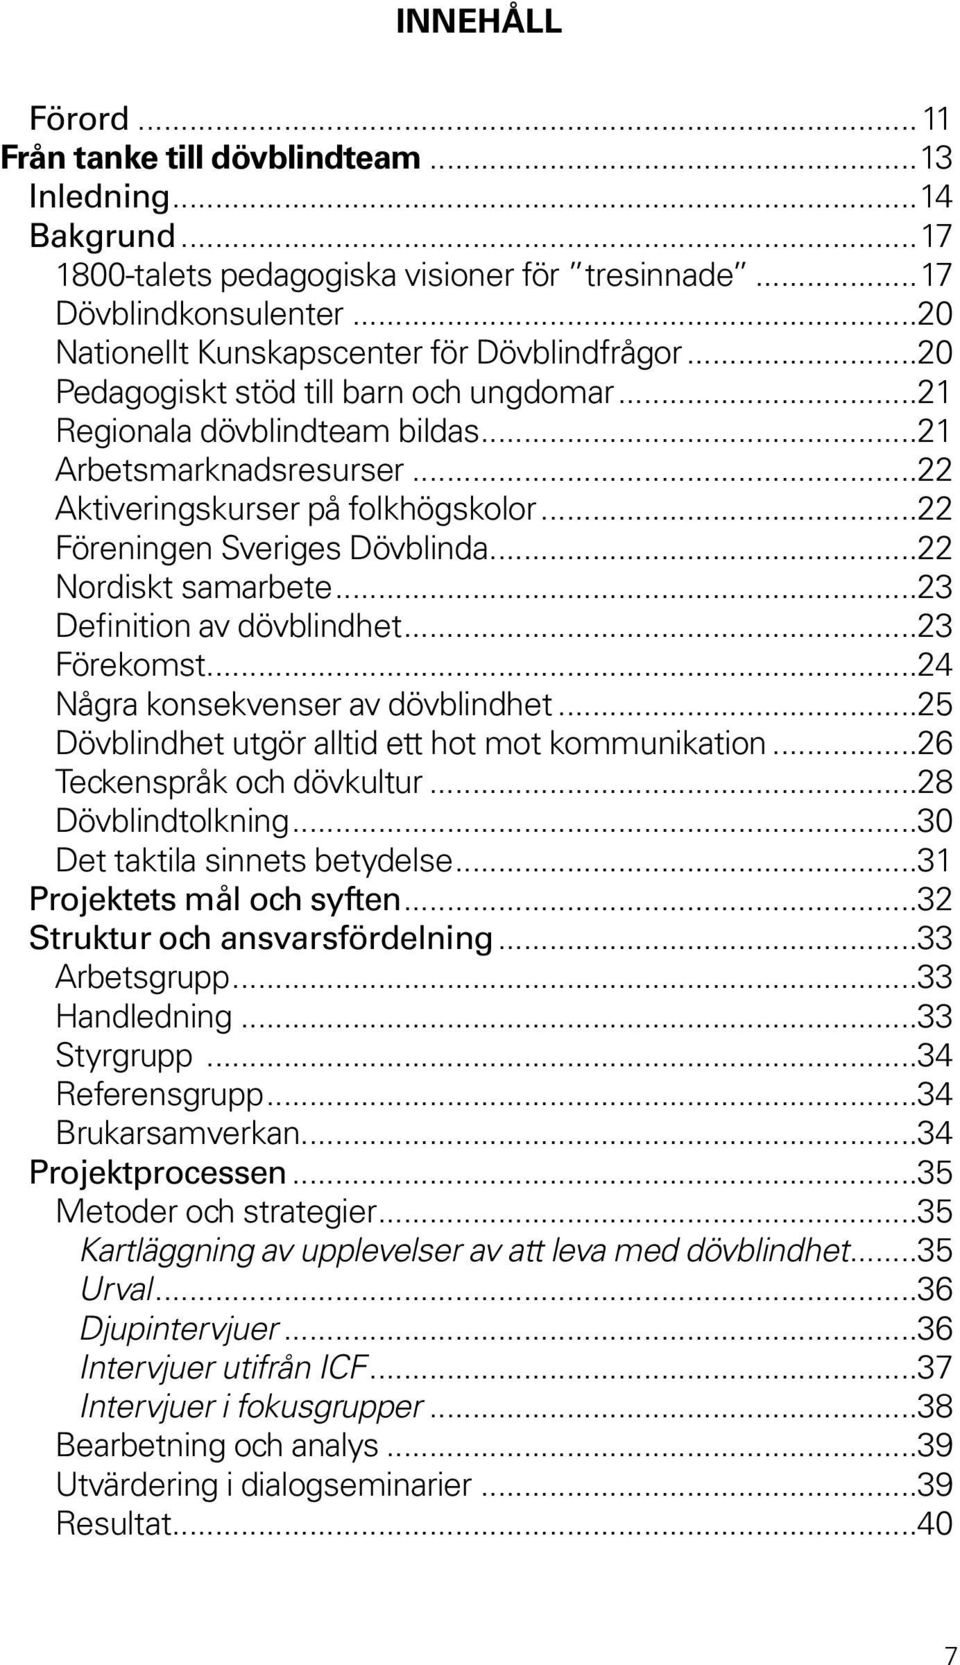 ..22 Föreningen Sveriges Dövblinda...22 Nordiskt samarbete...23 Definition av dövblindhet...23 Förekomst...24 Några konsekvenser av dövblindhet...25 Dövblindhet utgör alltid ett hot mot kommunikation.